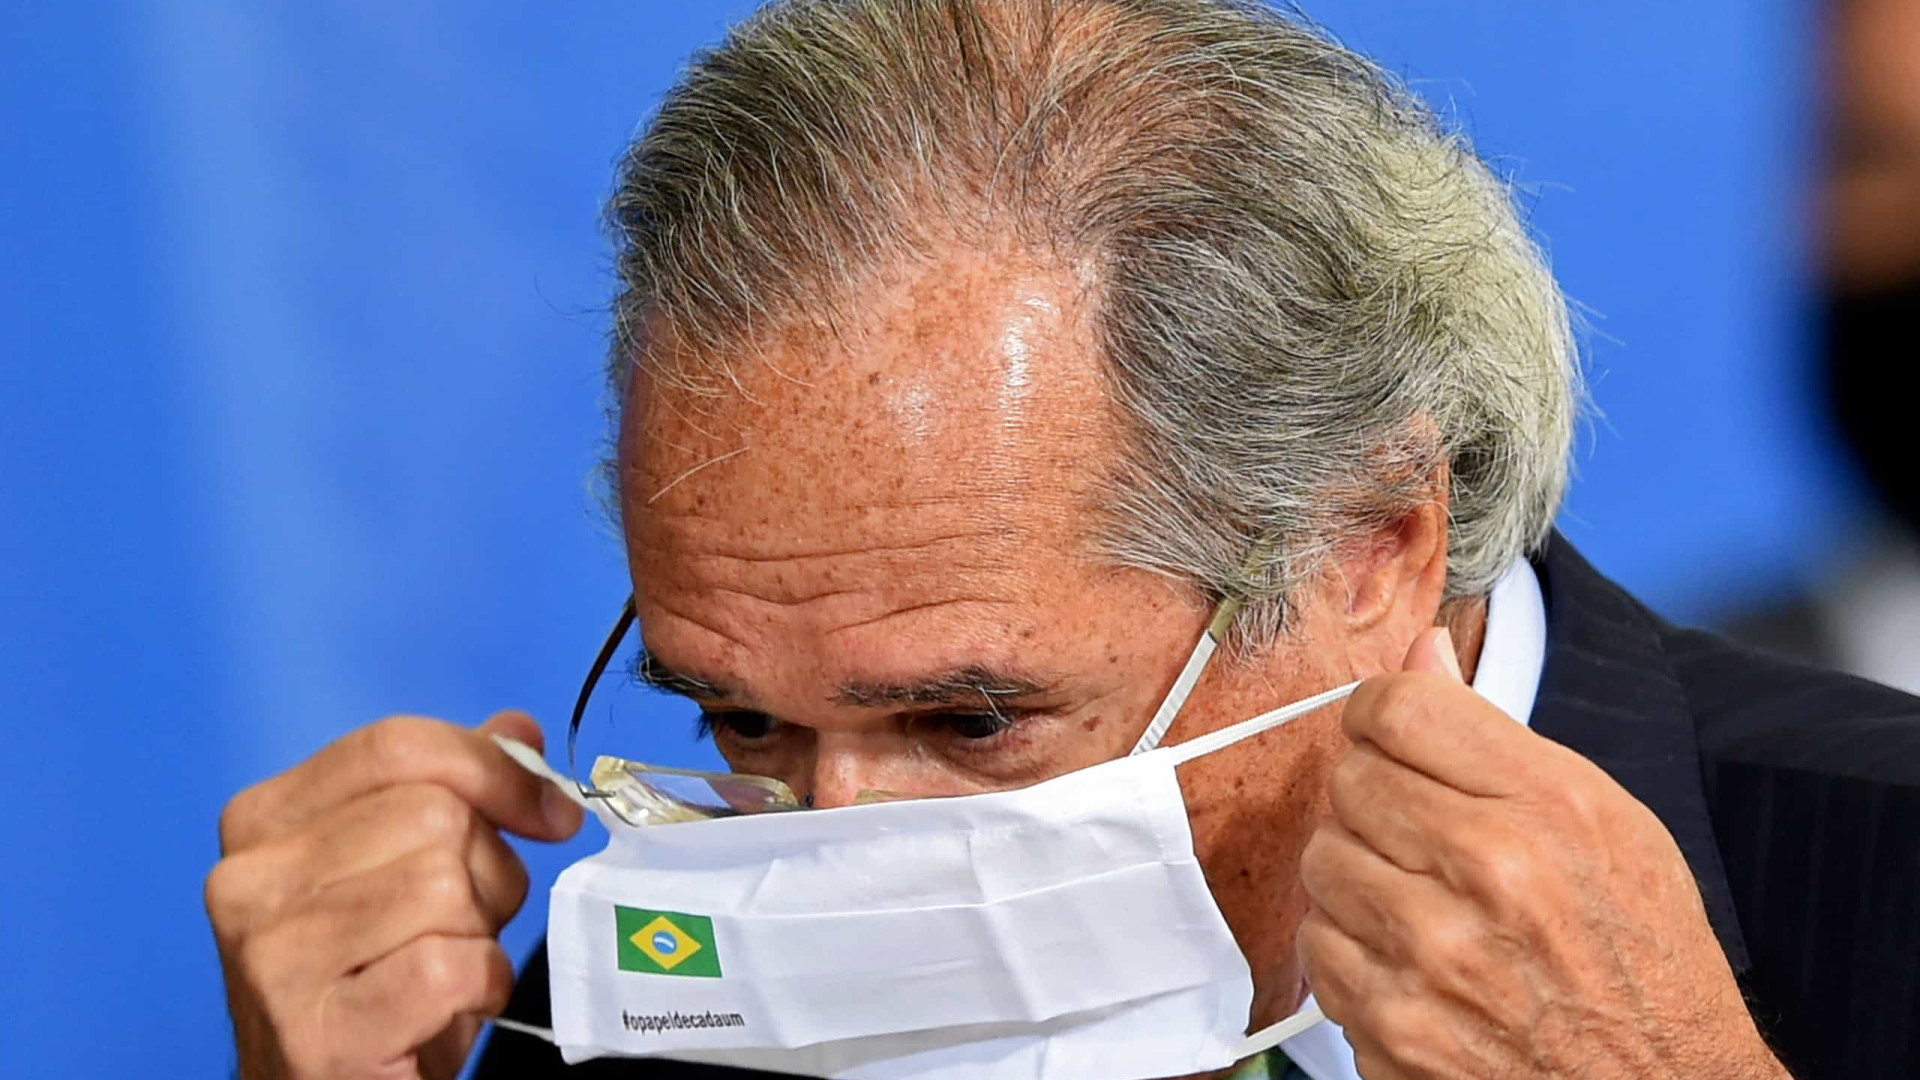 Mudança de ambiente com o Brasil em Davos é perceptível, diz Guedes